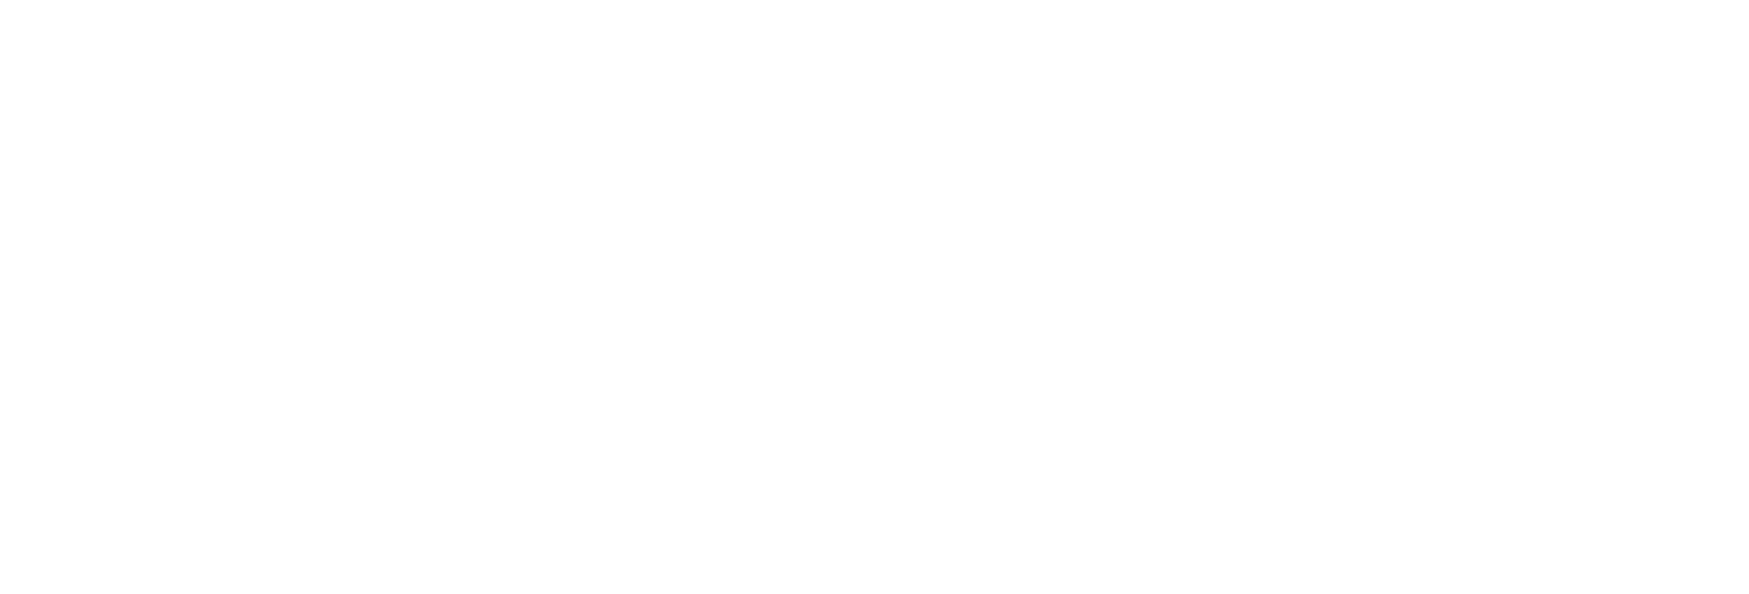 De blije merkontwikkelaar VENVN logo